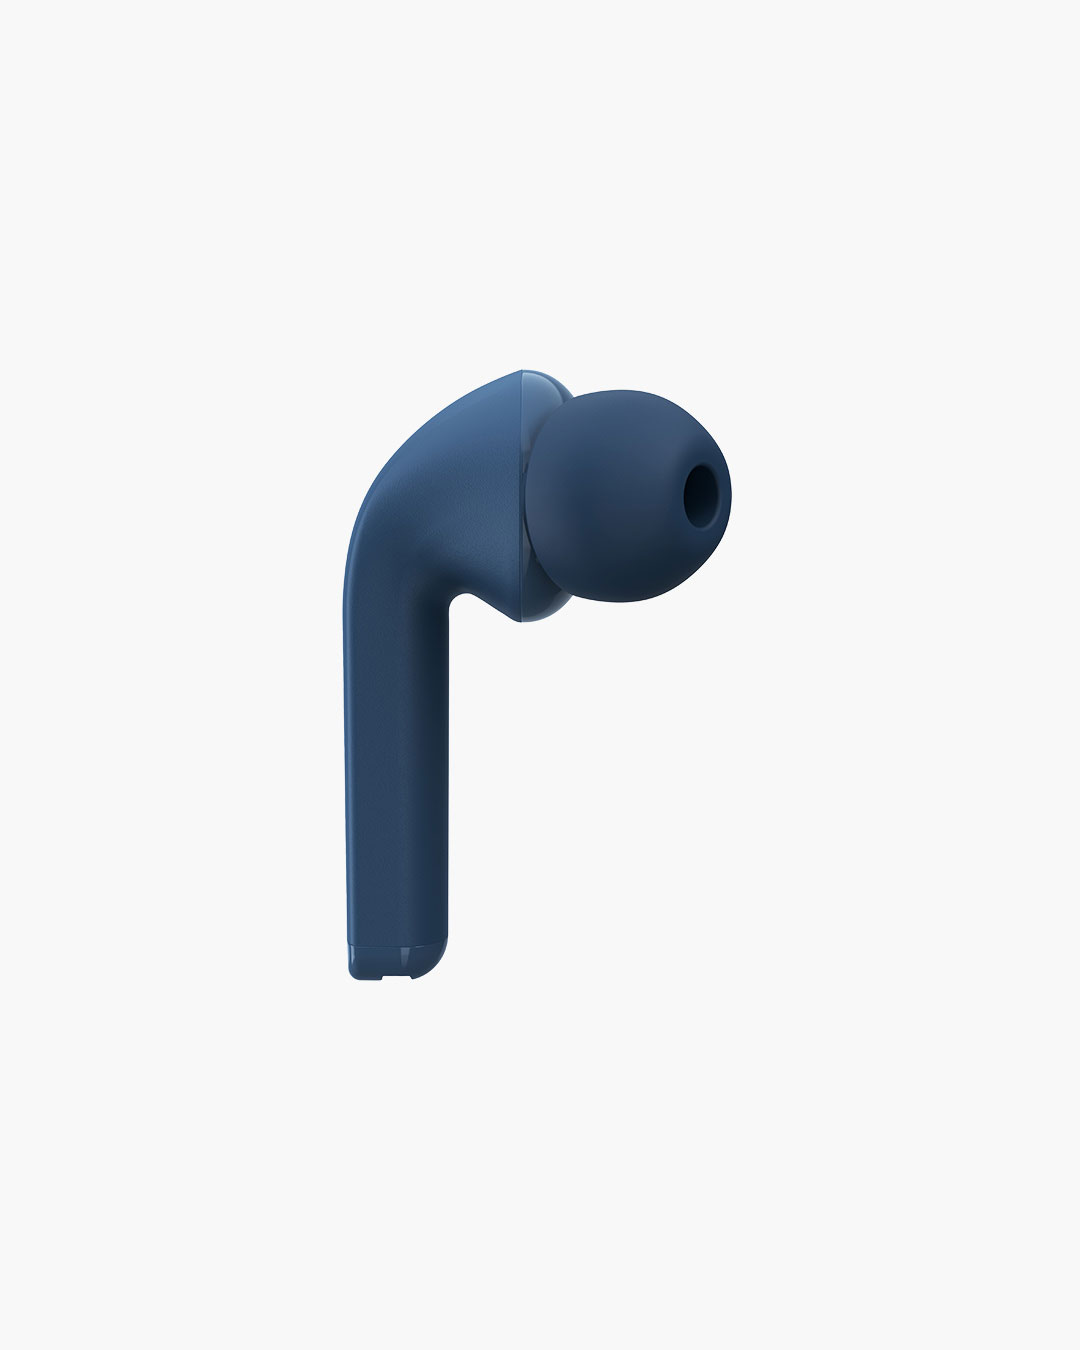 Fresh 'n Rebel - Twins 1 - True Wireless In-ear headphones with ear tip - Steel Blue